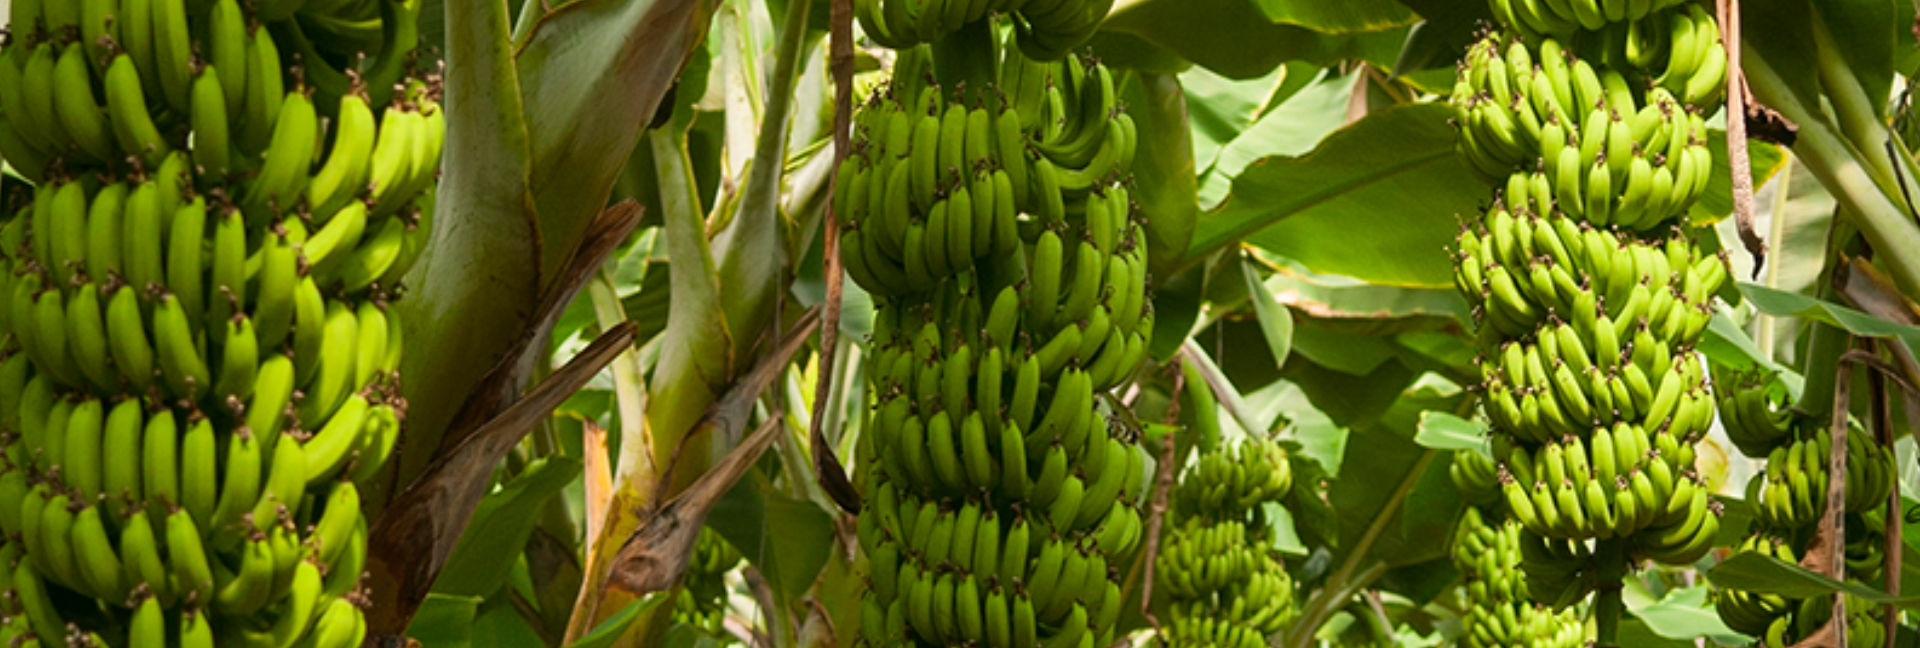 Vitropic Banane